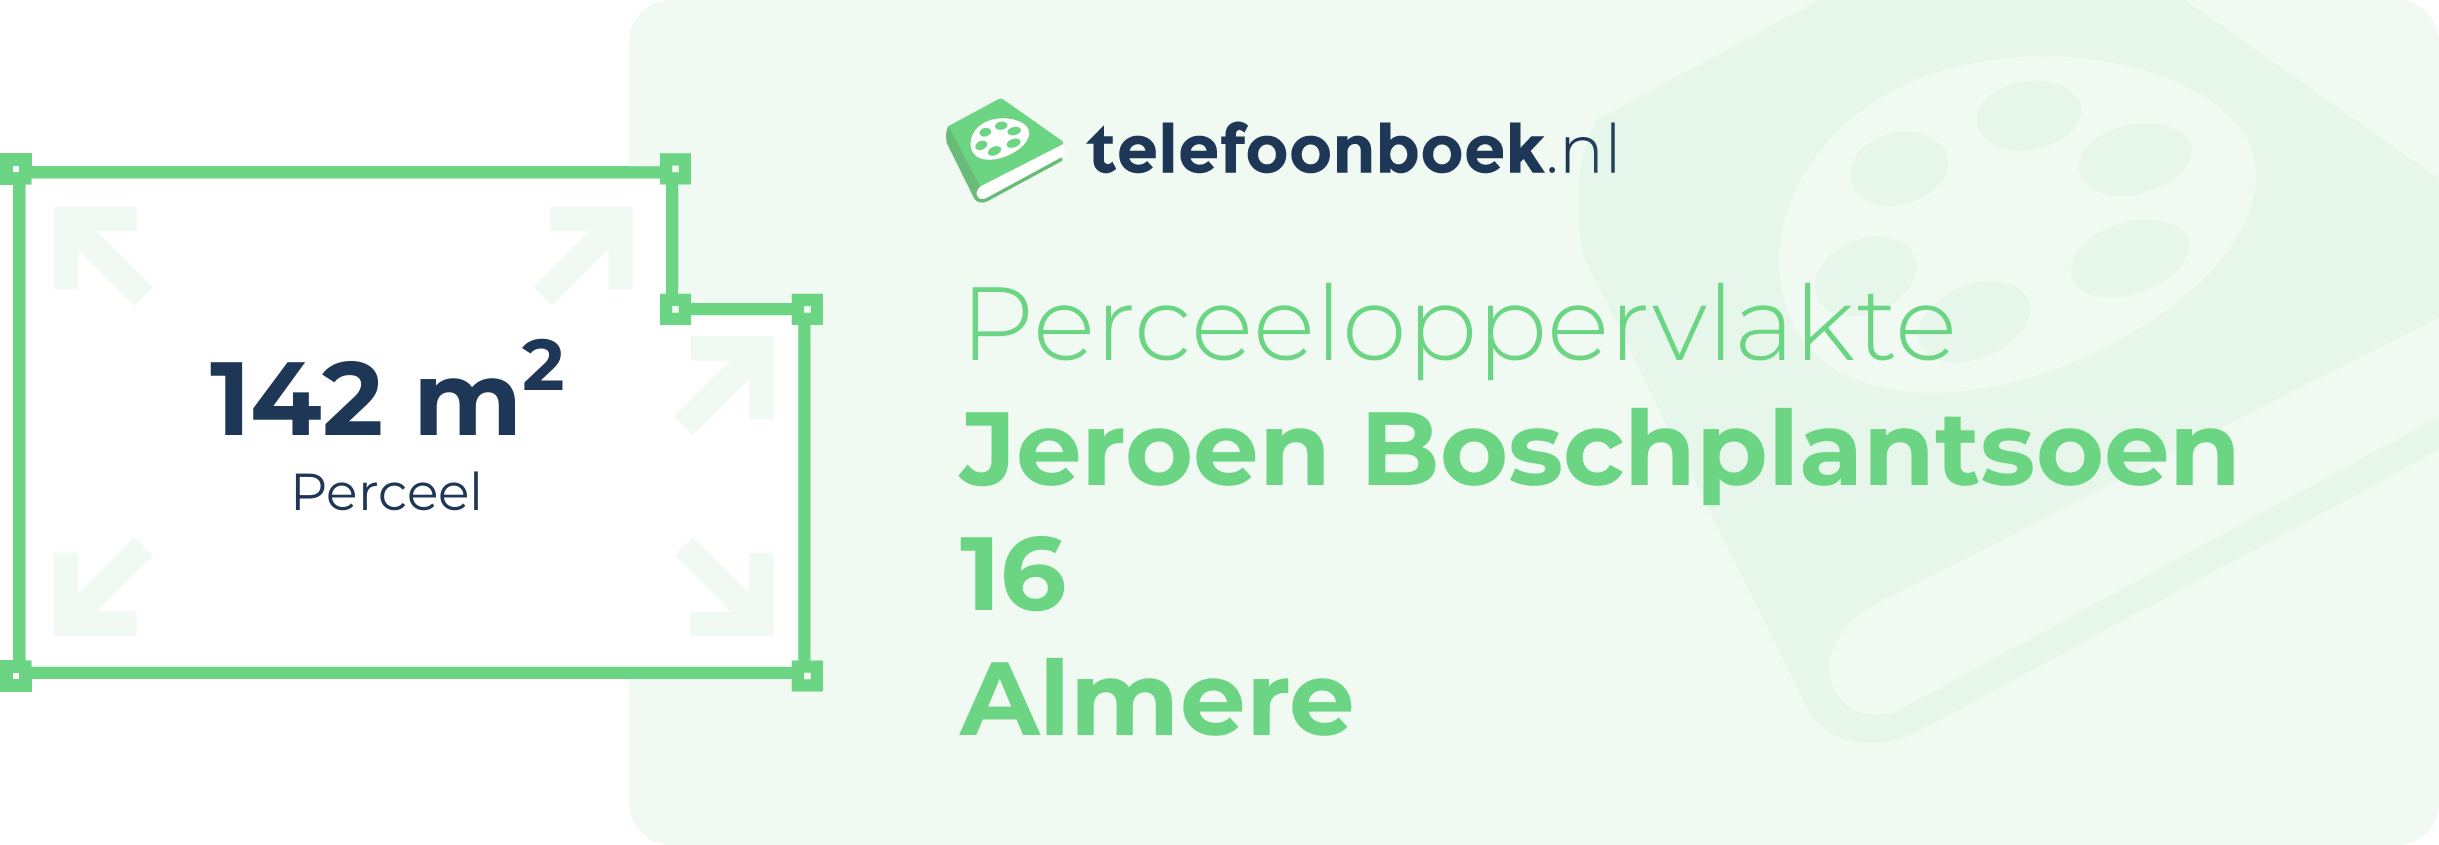 Perceeloppervlakte Jeroen Boschplantsoen 16 Almere